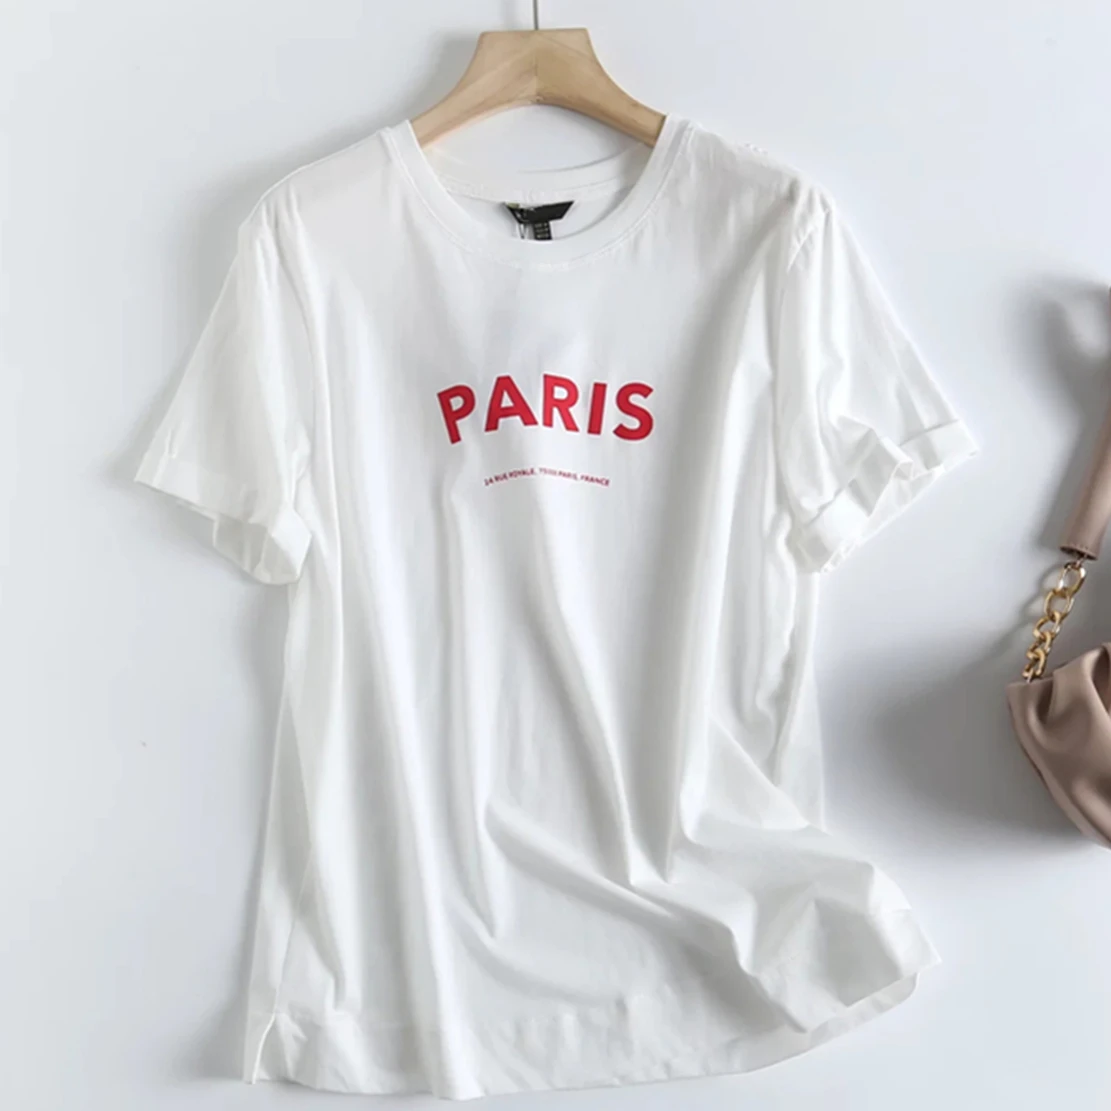 

Футболка Elmsk с круглым вырезом и надписью «Paris», хлопковая белая футболка в английском стиле, Повседневная летняя футболка с коротким рукаво...